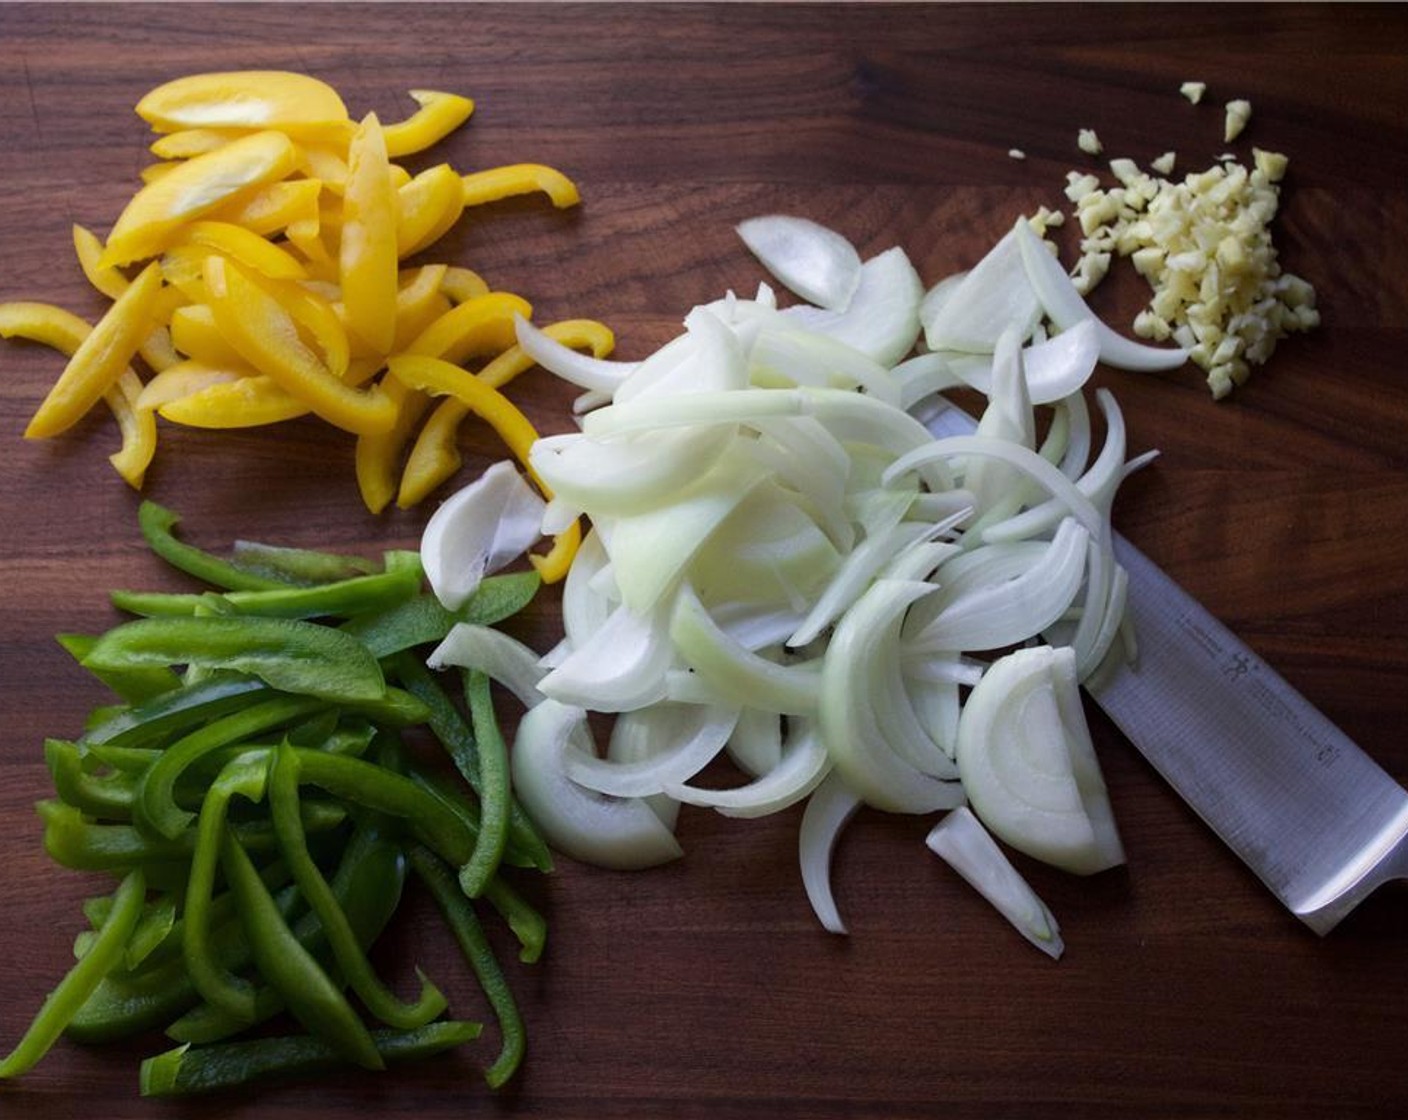 Schritt 3 Zwiebel (1), gelbe Peperoni (1) und grüne Peperoni (1) in Streifen (Julienne) schneiden. Knoblauch (5 Zehen) schälen und fein hacken.